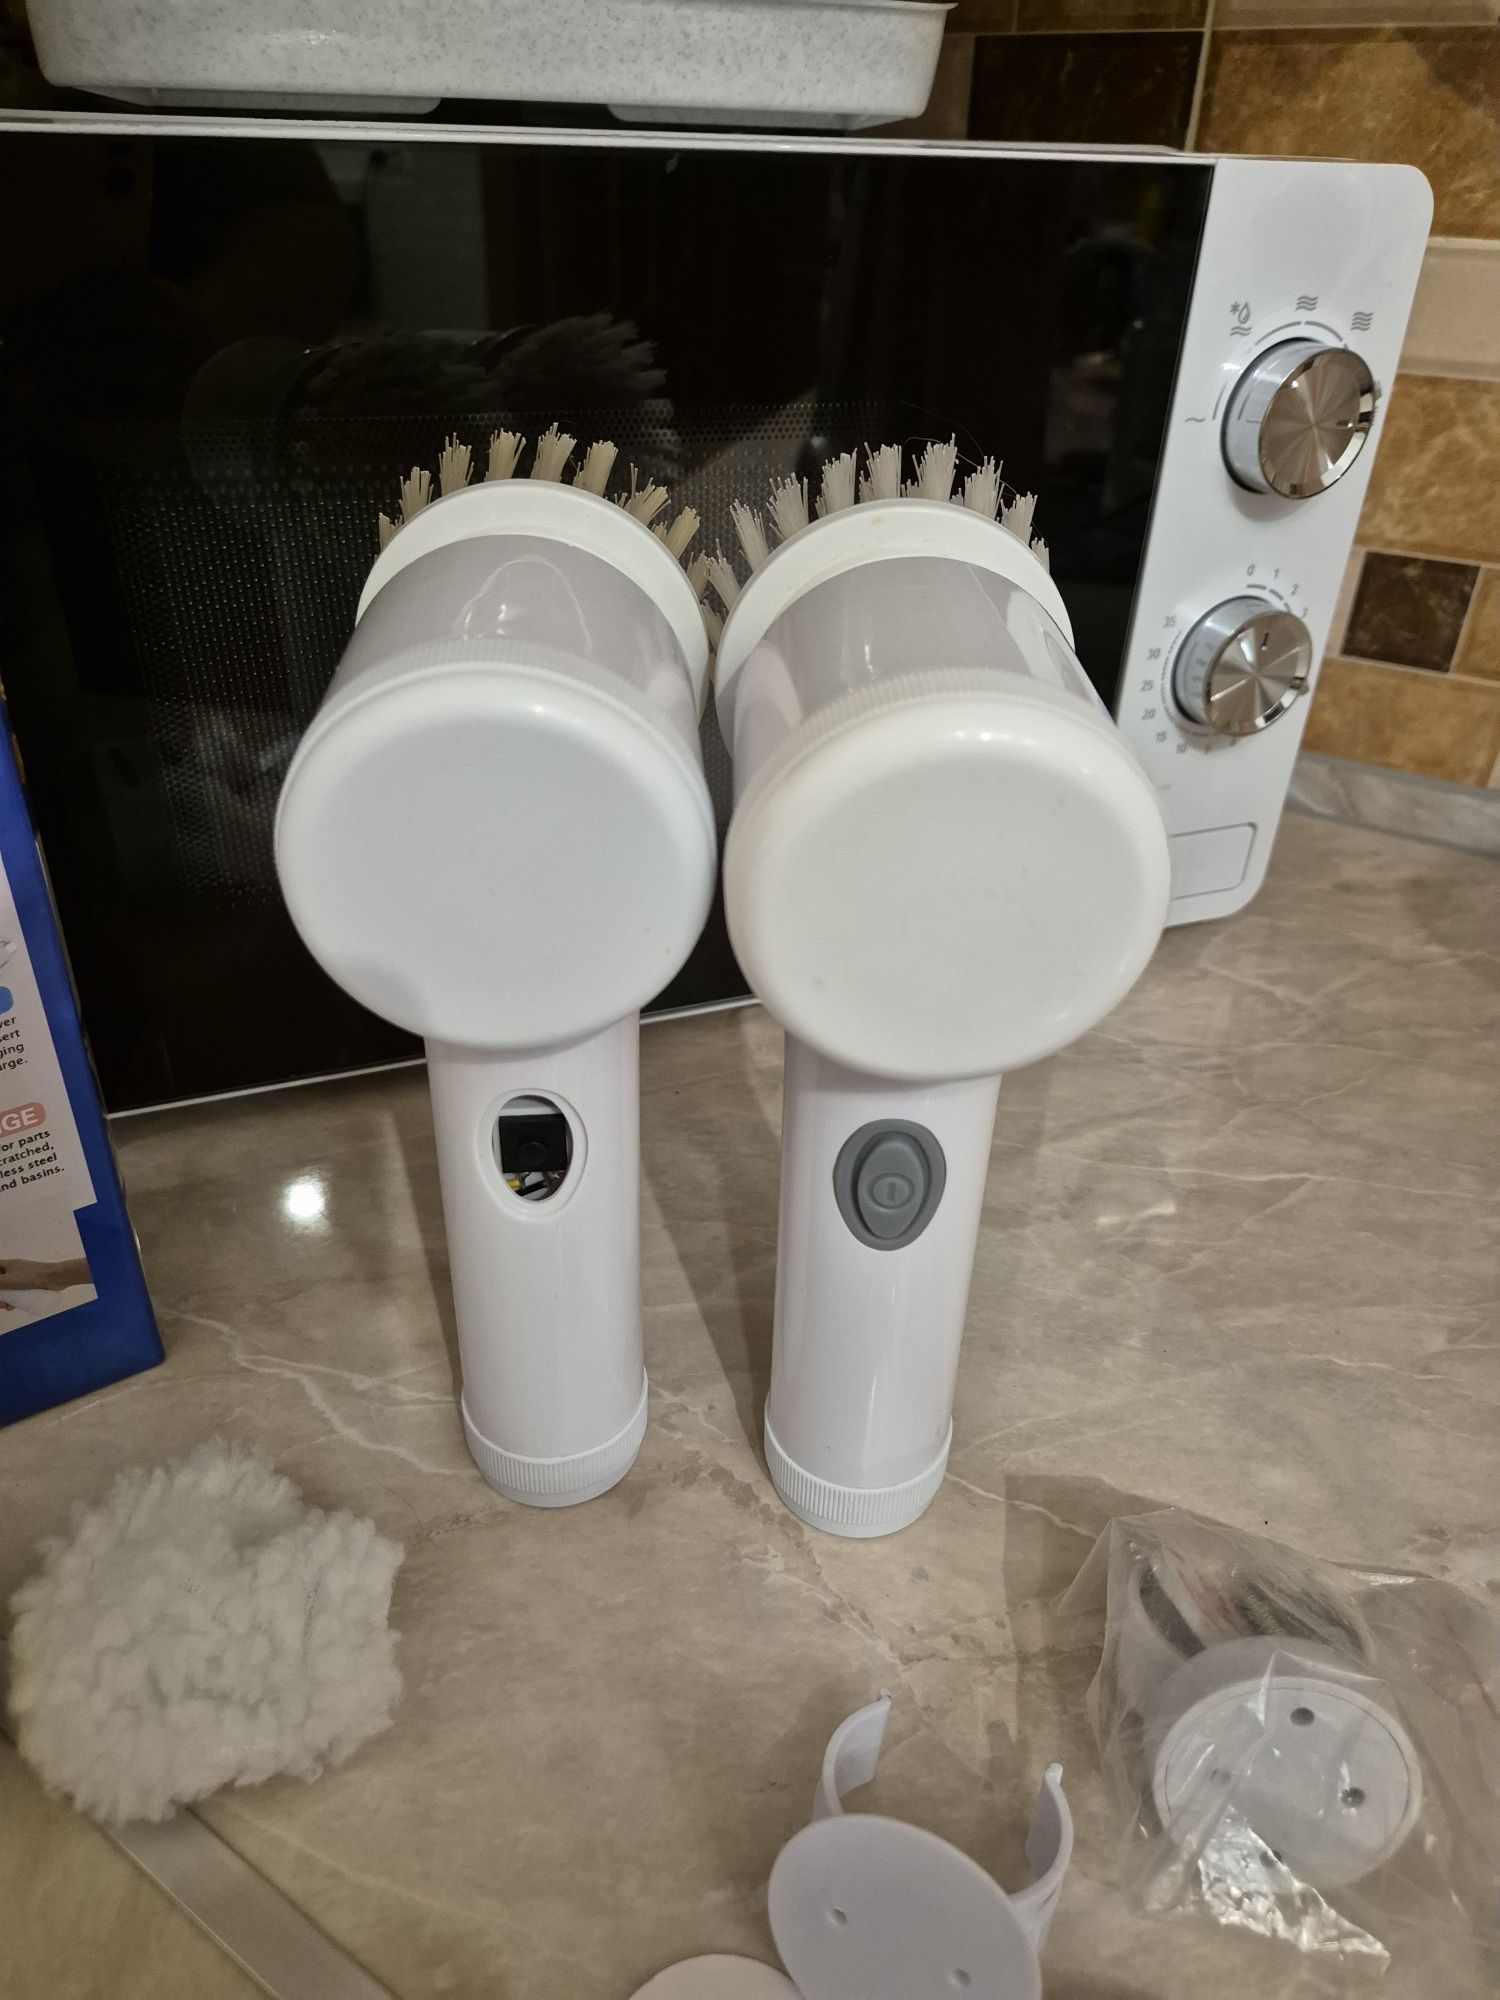 Продам дві электричні щітки для прибирання Magic Brush (щетка для убор